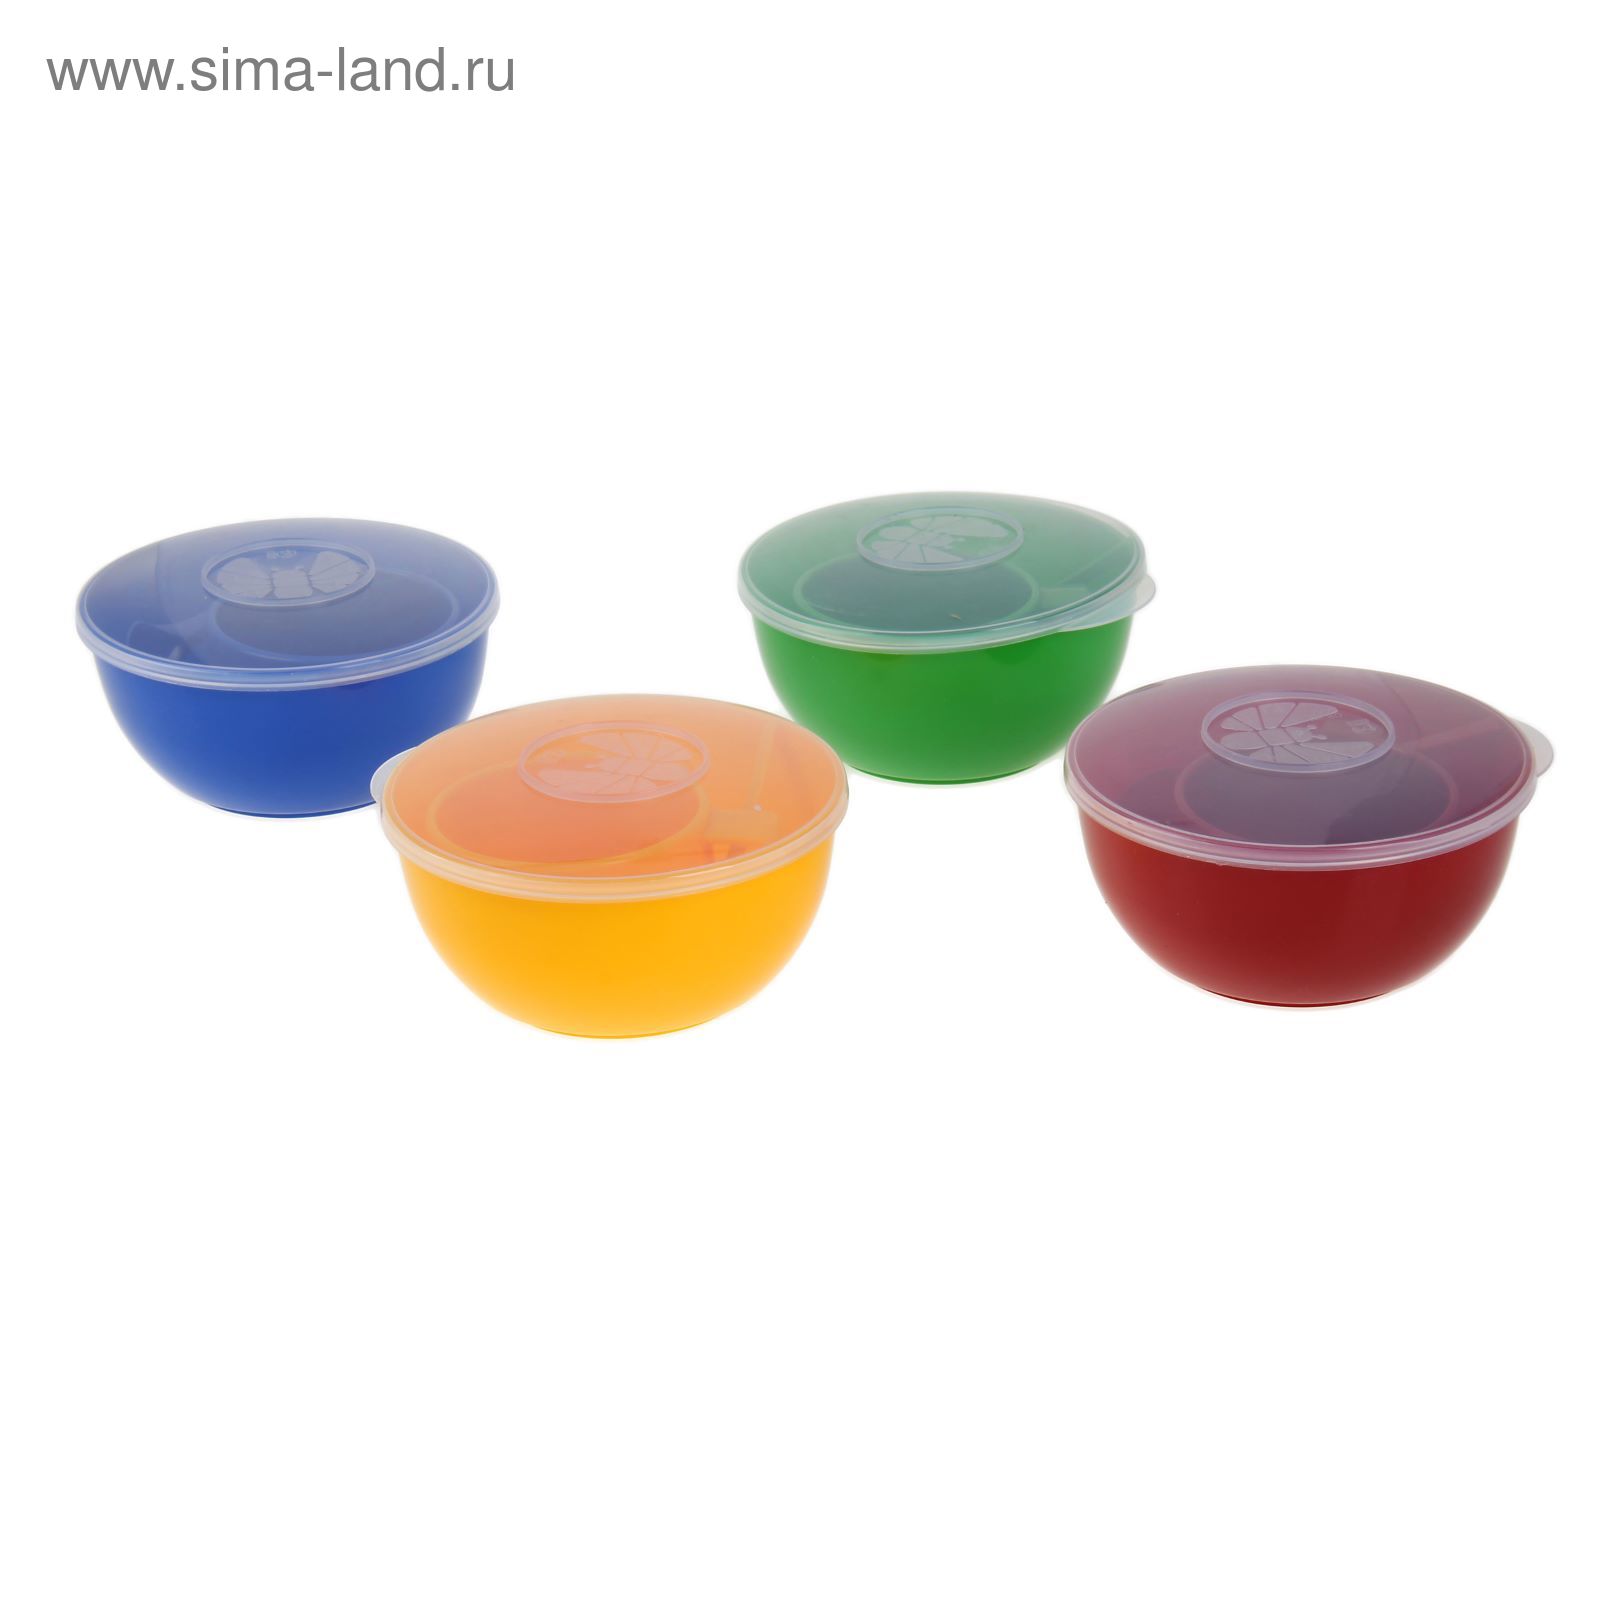 Дорожный набор посуды на 1 персону, цвет МИКС